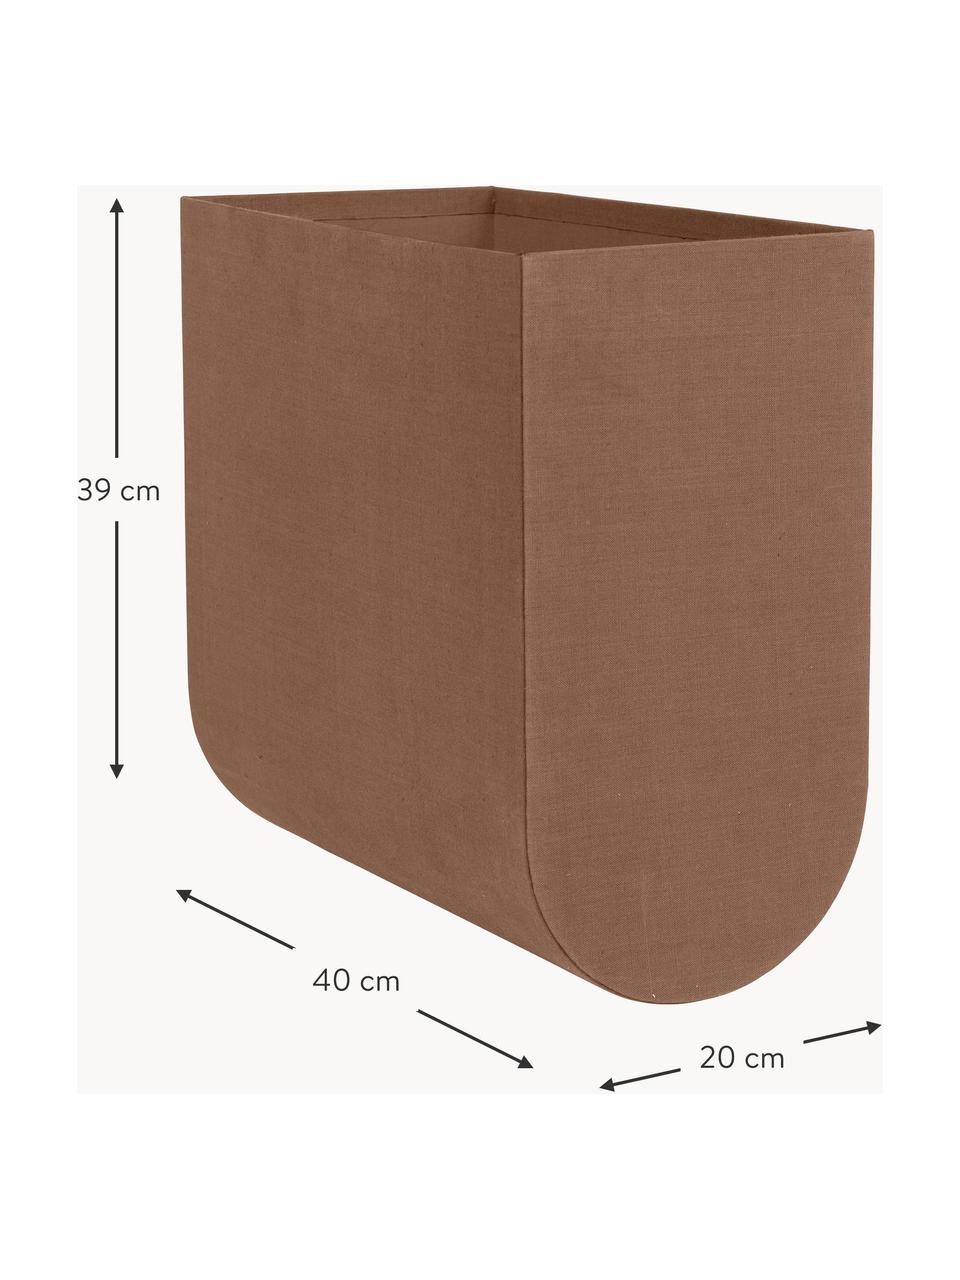 Handgefertigte Aufbewahrungsbox Curved, B 20 cm, Bezug: 100 % Baumwolle, Korpus: Pappe, Braun, B 20 x H 39 cm